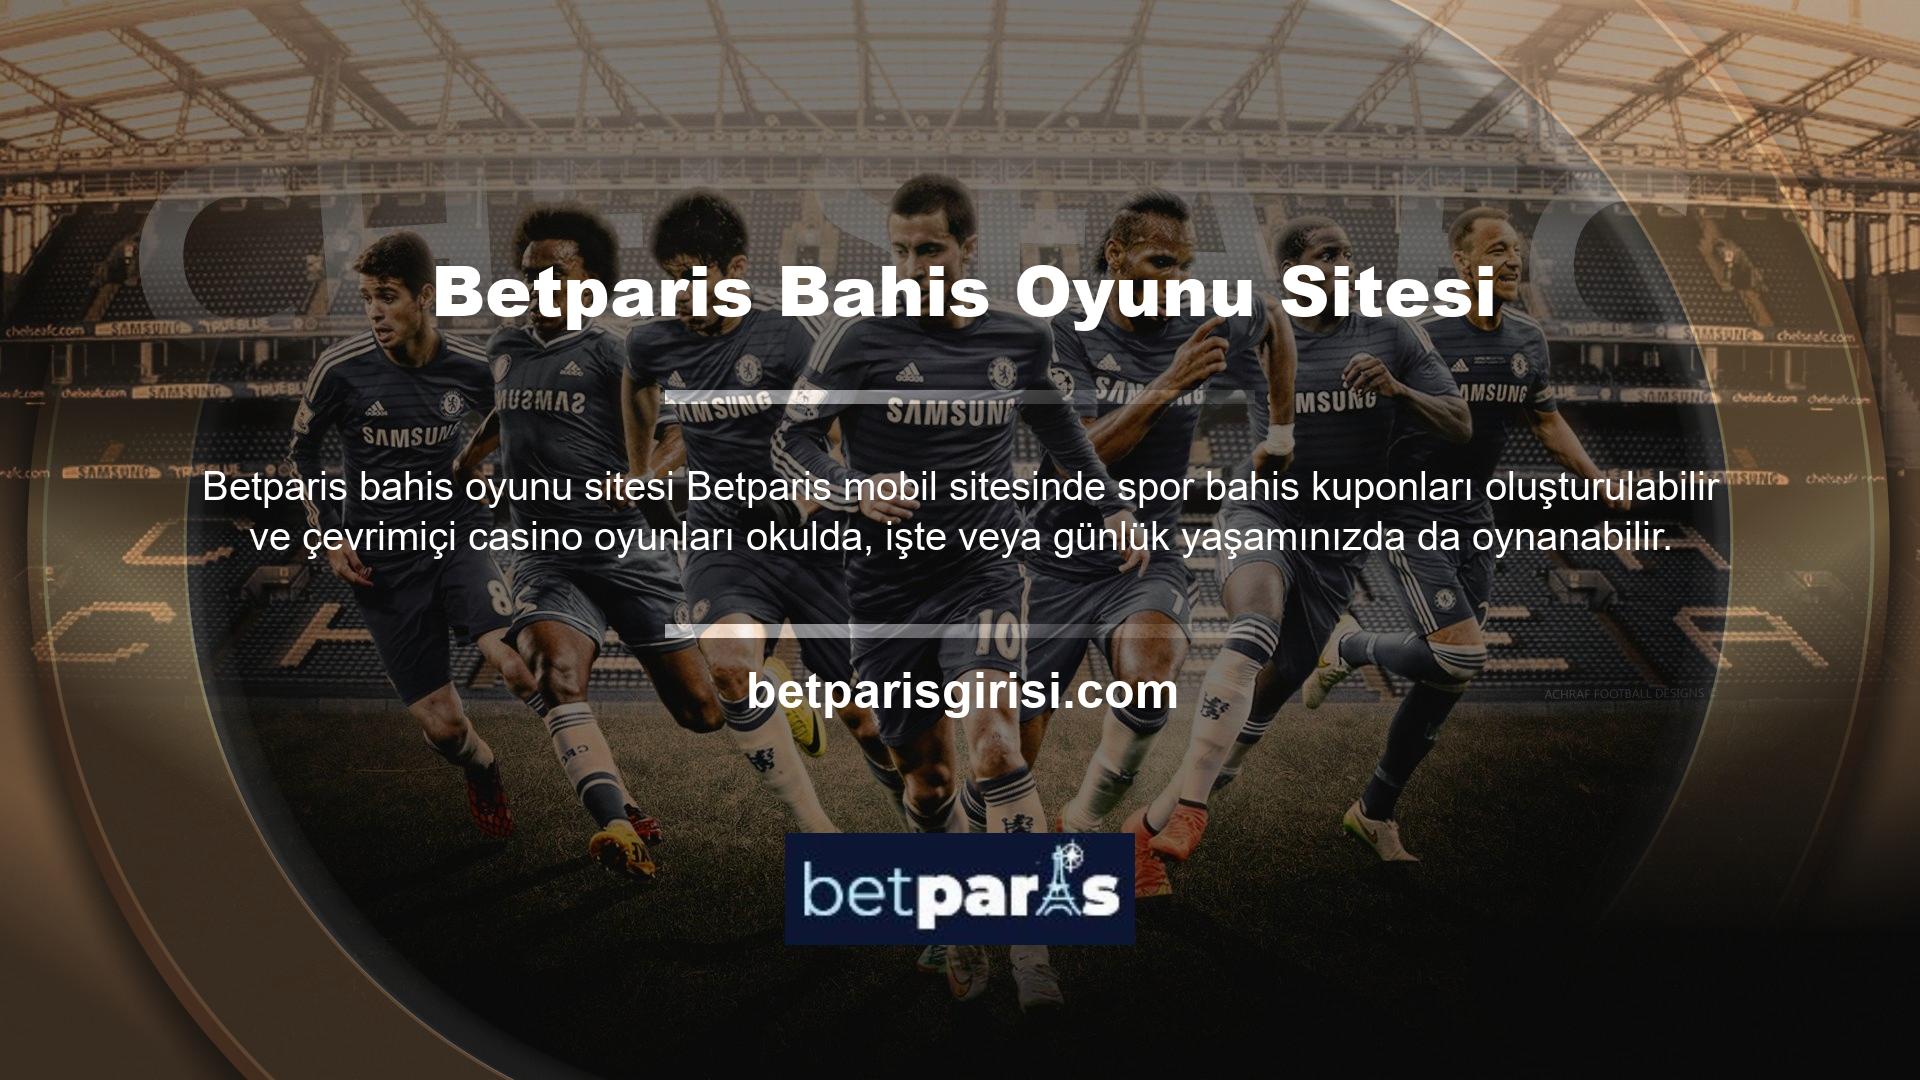 Betparis öncelikle üyelerine çevrimiçi oyun ve casino sitelerinin oyunlar ve casinolar bölümü aracılığıyla hizmet vermektedir